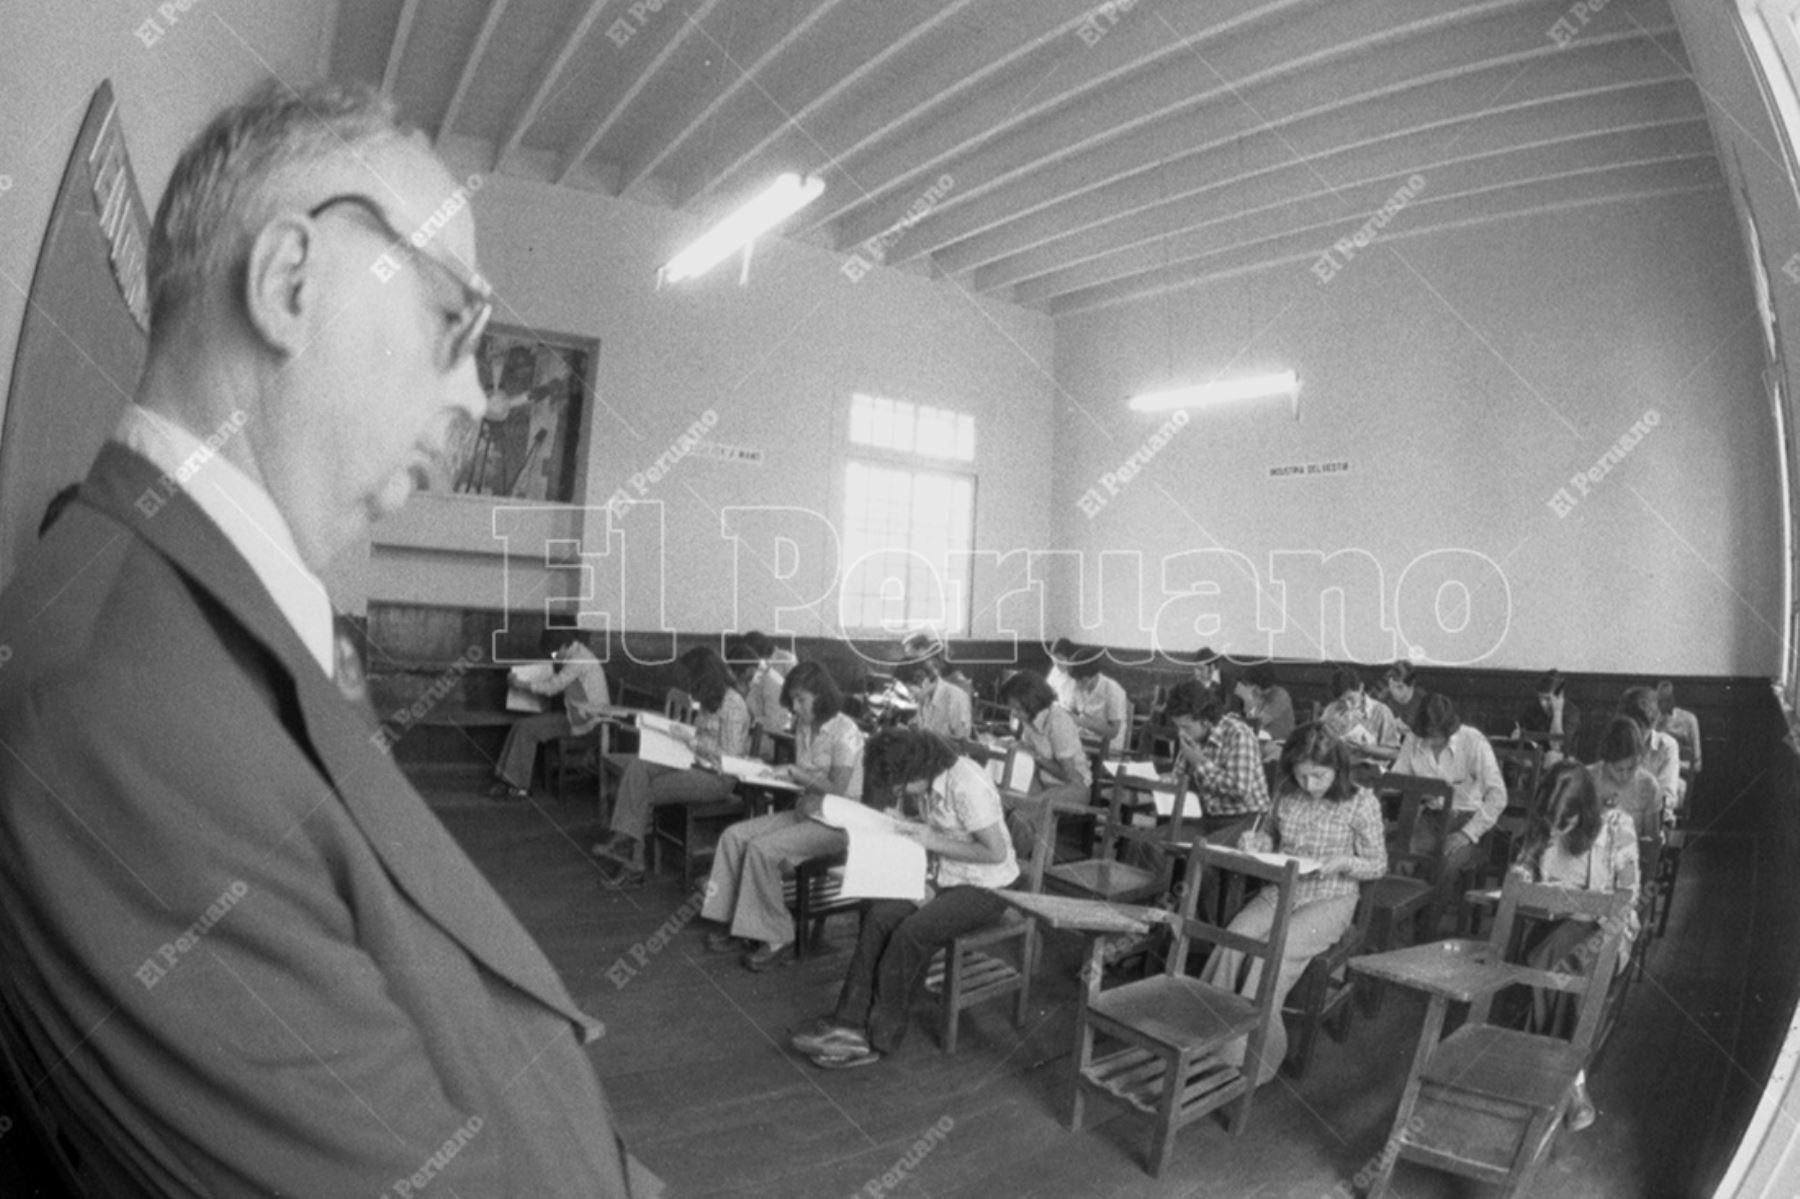 Lima - 18 diciembre 1977 /  Postulantes a la Universidad Nacional Mayor de San Marcos rinden el examen de admisión en el colegio Alfonso Ugarte. Foto: Archivo Histórico de El Peruano / Rolando Ángeles